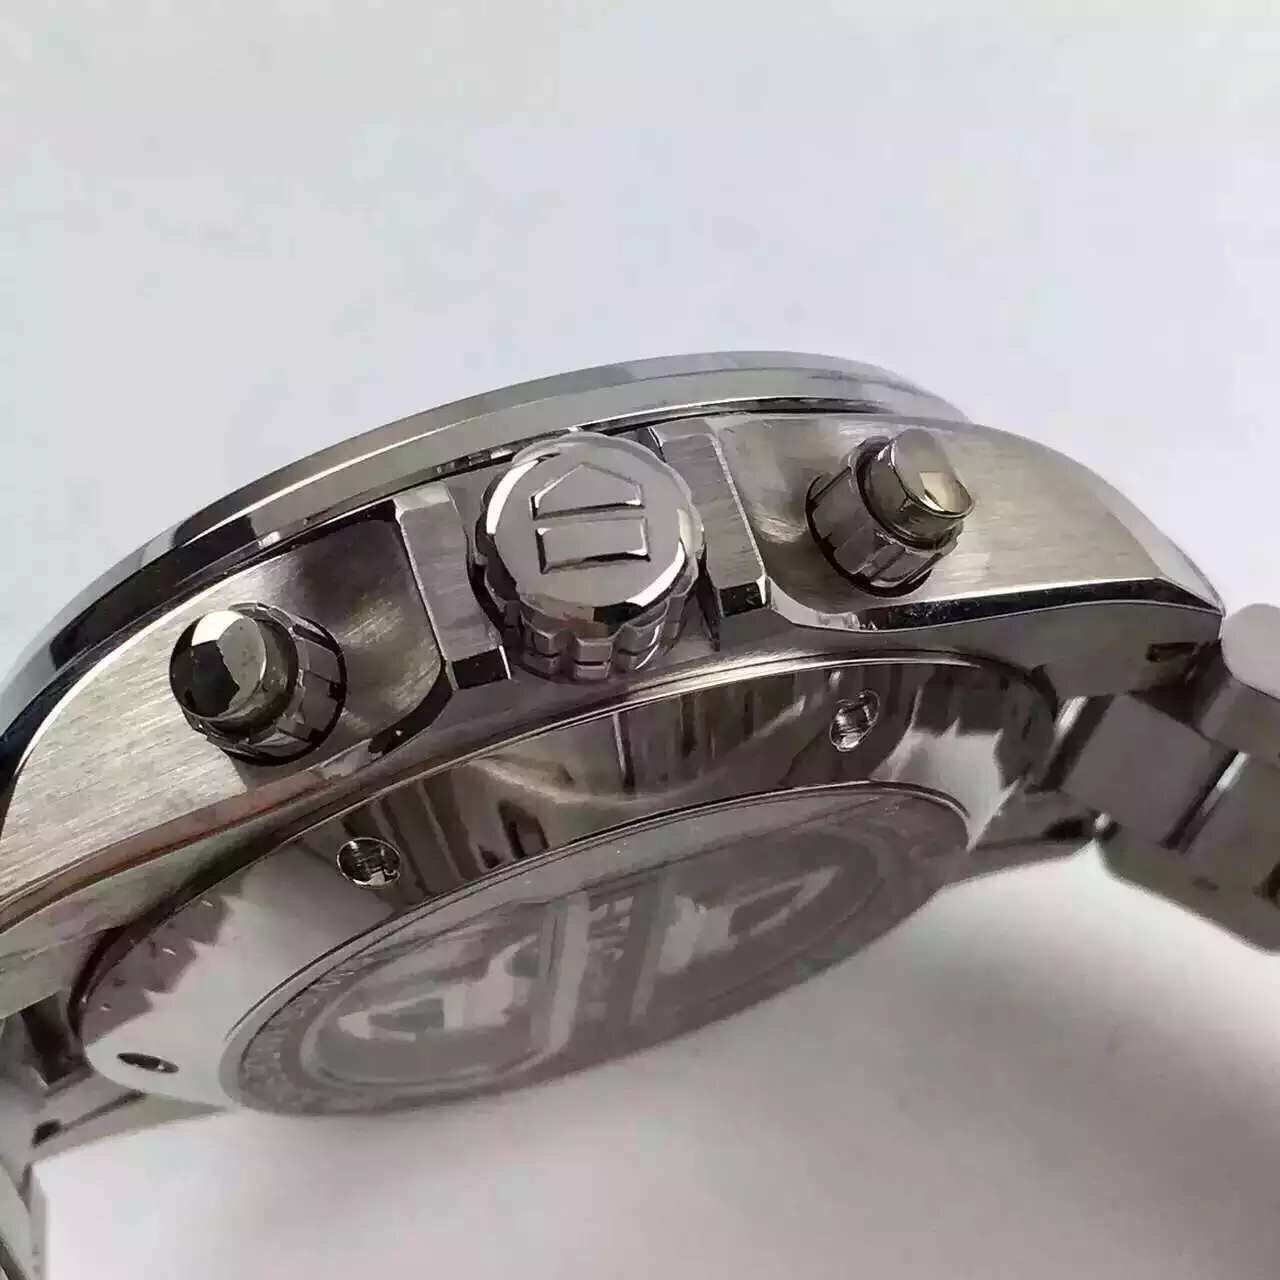 2023030607100953 - 泰格豪雅卡萊拉高仿手錶 V6廠泰格豪雅￥2980